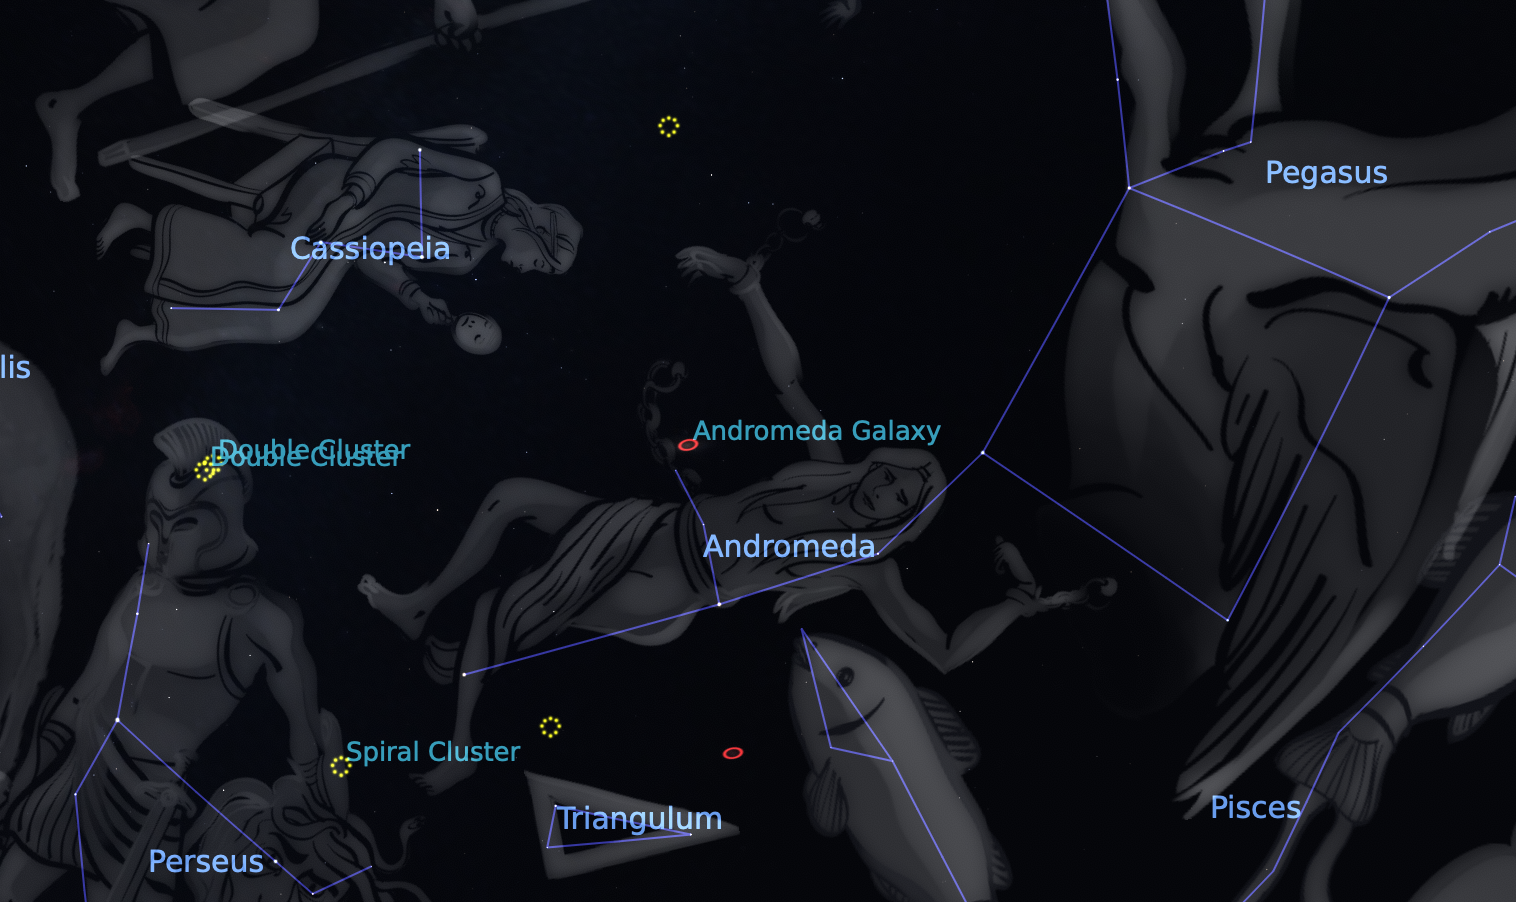 Կասիոպեա, Անդրոմեդա և Պեգաս համաստեղությունների սքրինշոթը՝ Stellarium ծրագրից